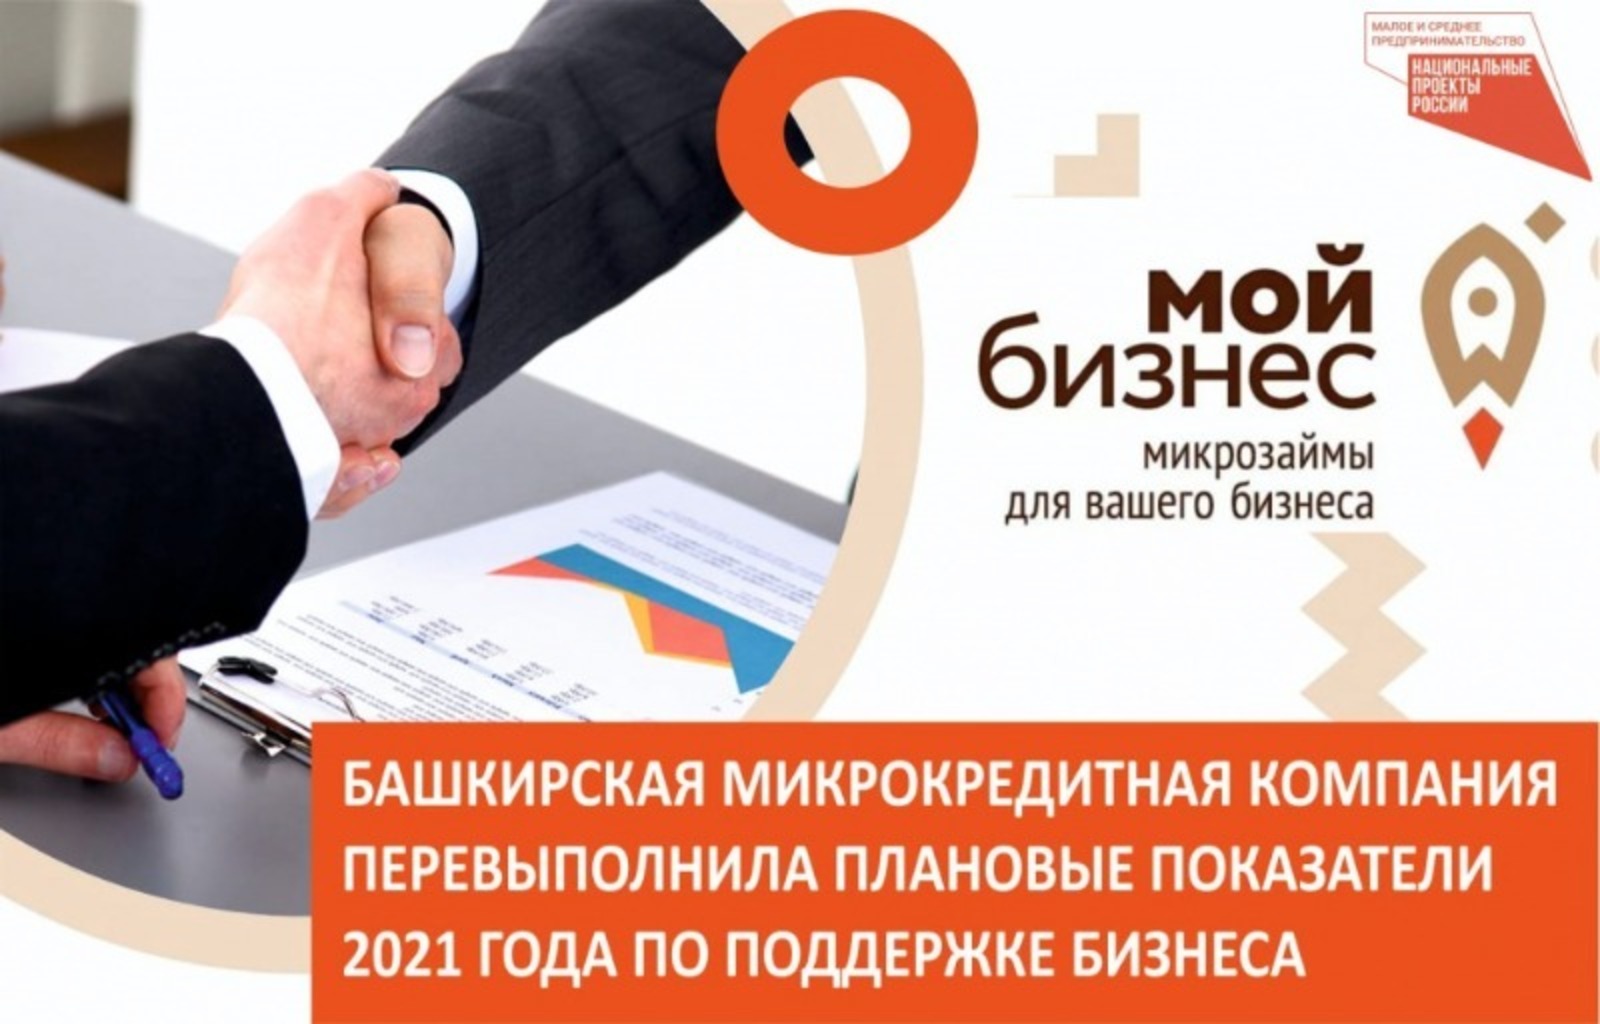 В рамках нацпроекта в Башкирии увеличили лимиты финансирования предприятий